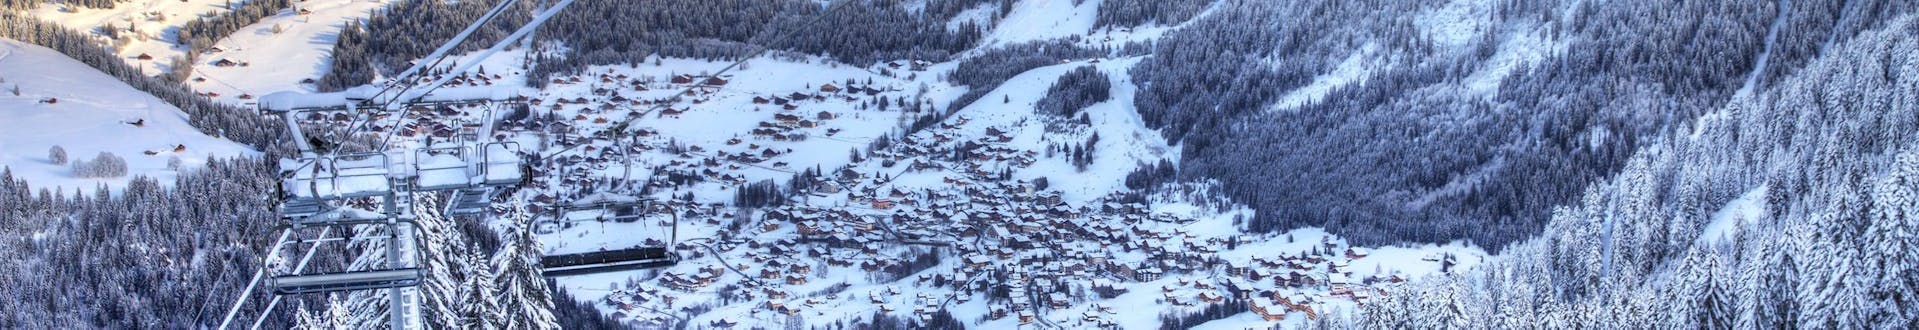 Vue de la station de ski française de Chatel avec ses pistes où les écoles de ski locales offrent un large éventail de cours de ski pour ceux qui veulent apprendre à skier.